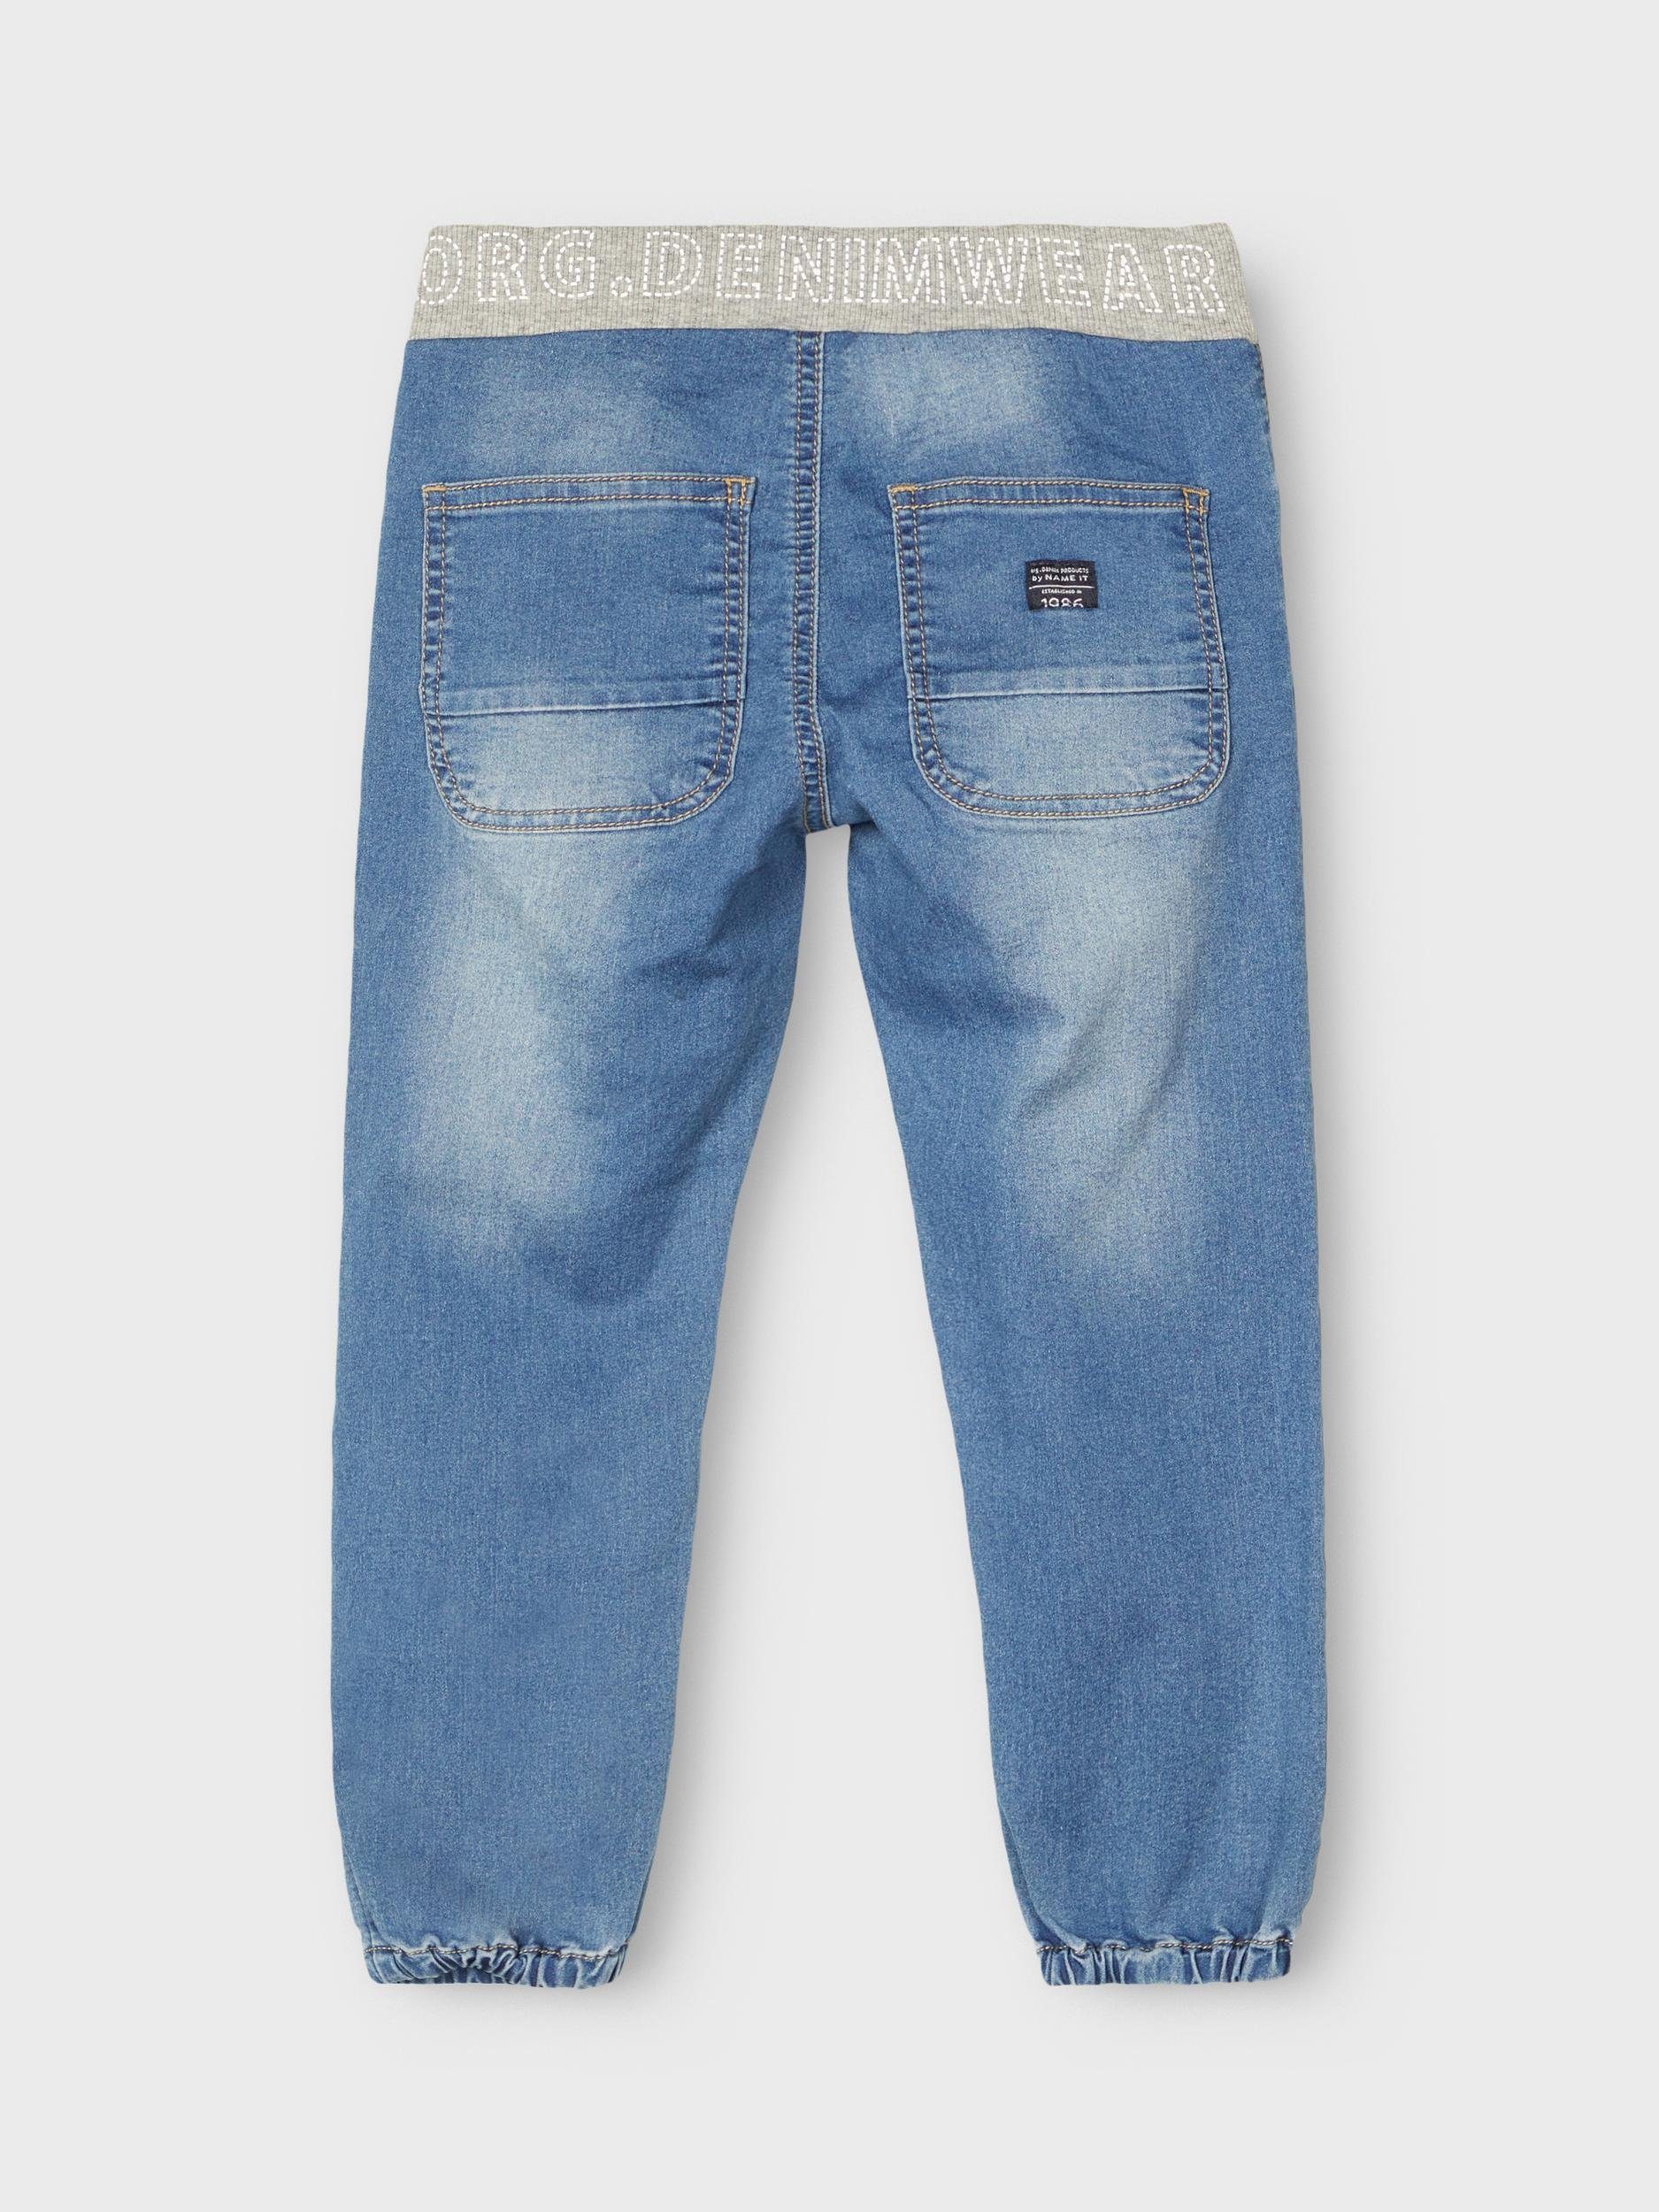 Jeanshose 5-Pocket-Jeans Name Kordelzug Jungen It Name Baggy mit It